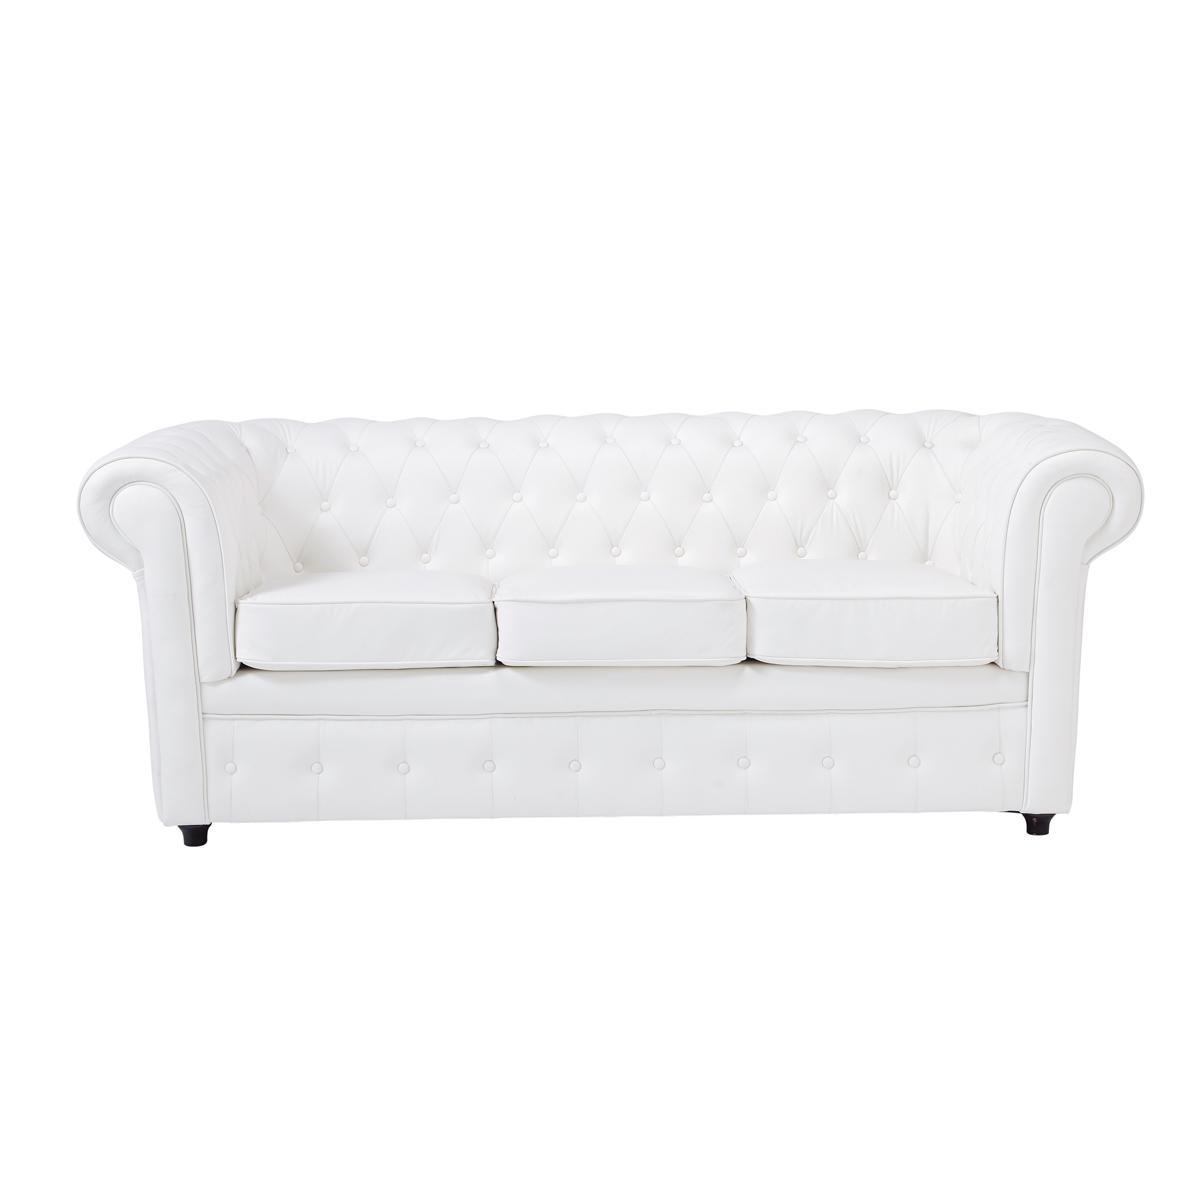 Foto Sofá de 3 plazas fijo acolchado aspecto cuero blanco Chesterfield foto 635465